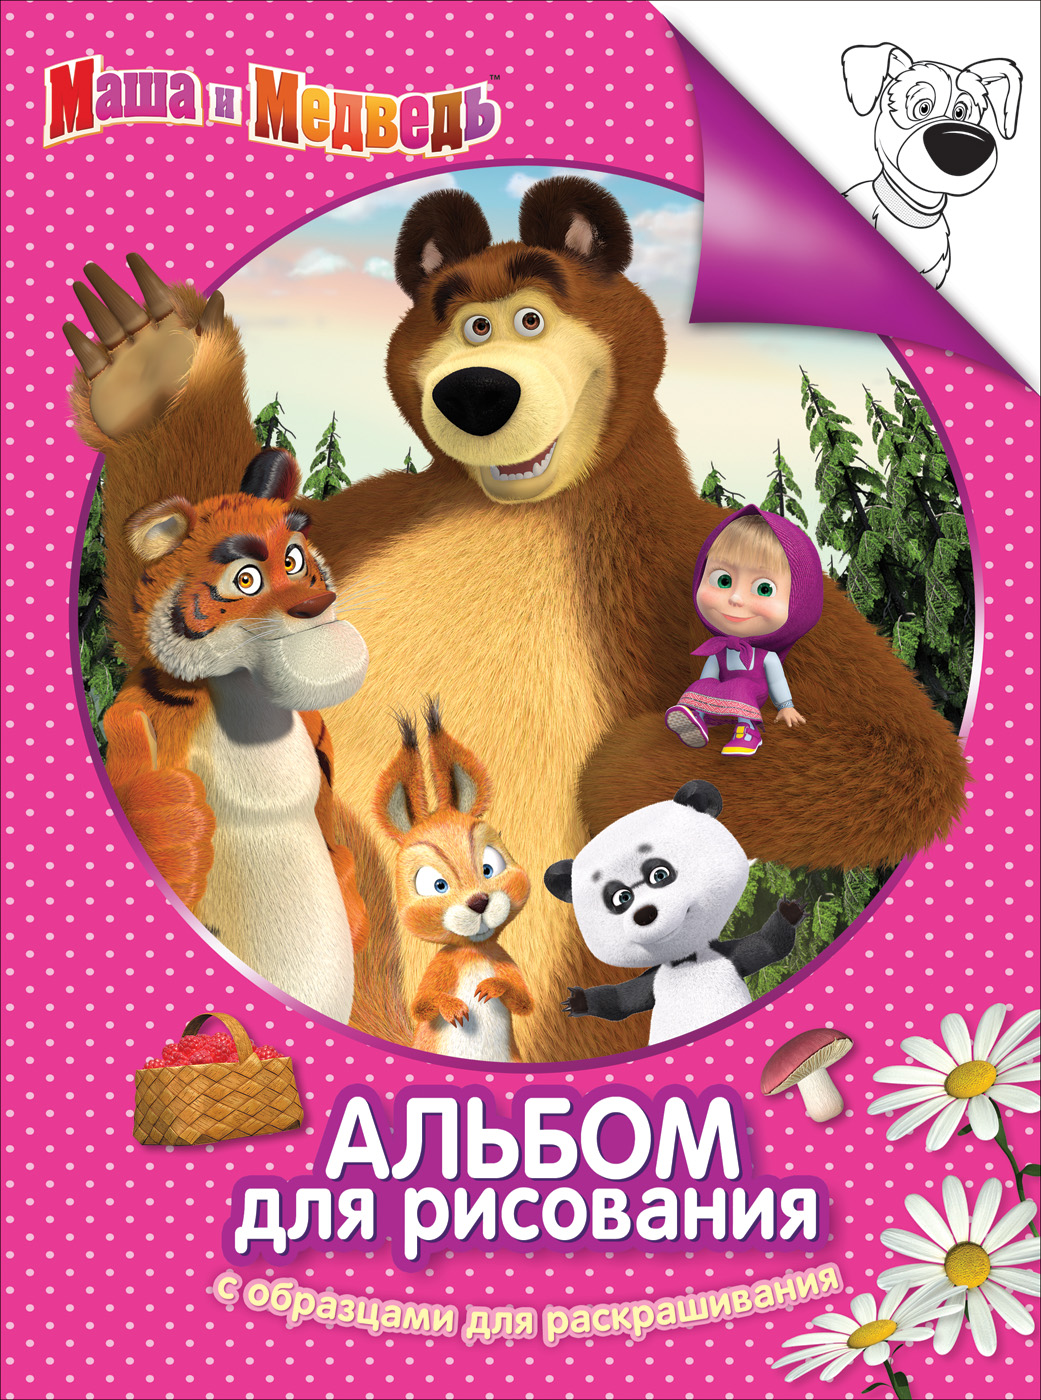 Альбом-раскраска 30915 Маша и Медведь розов Росмэн - Пенза 